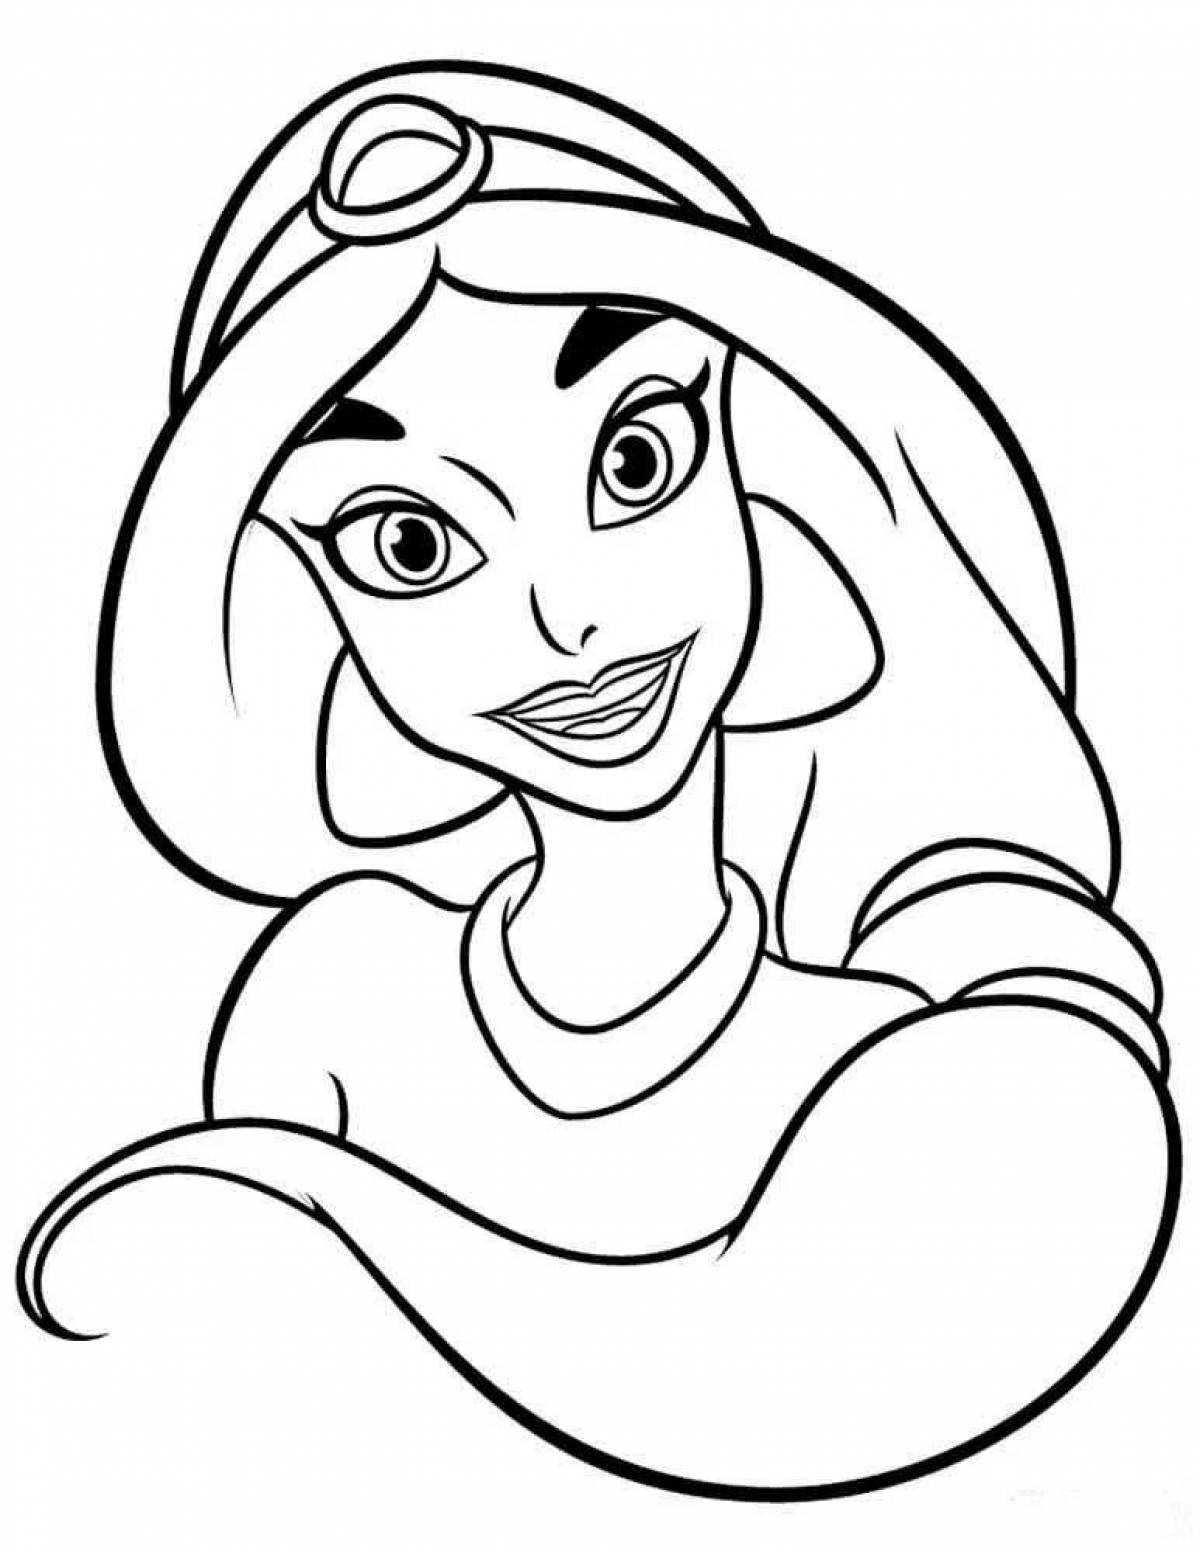 Disney princess dazzle coloring book